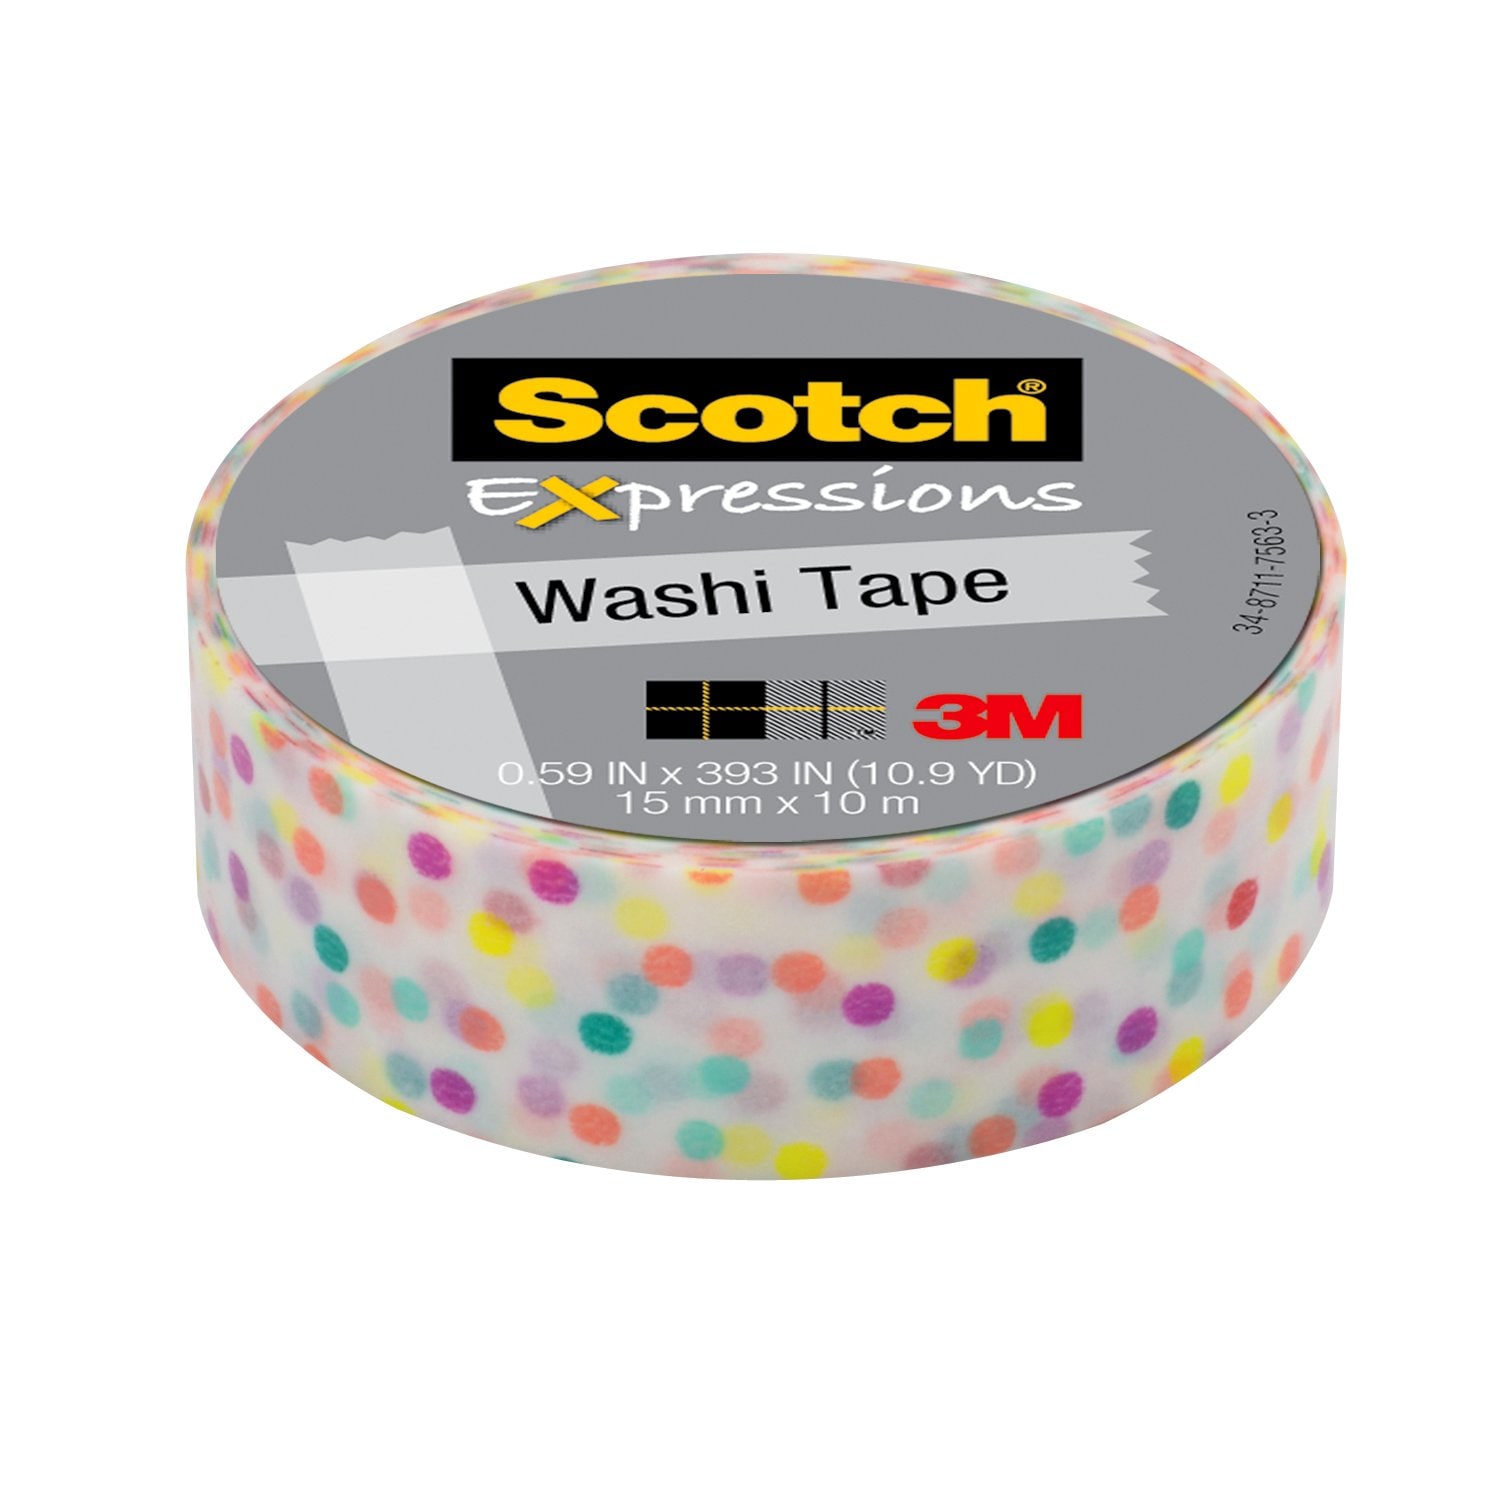 7100024397 - Scotch Expressions Washi Tape C314-P47, .59 in x 393 in (15 mm x 10 m)
Fun Dots